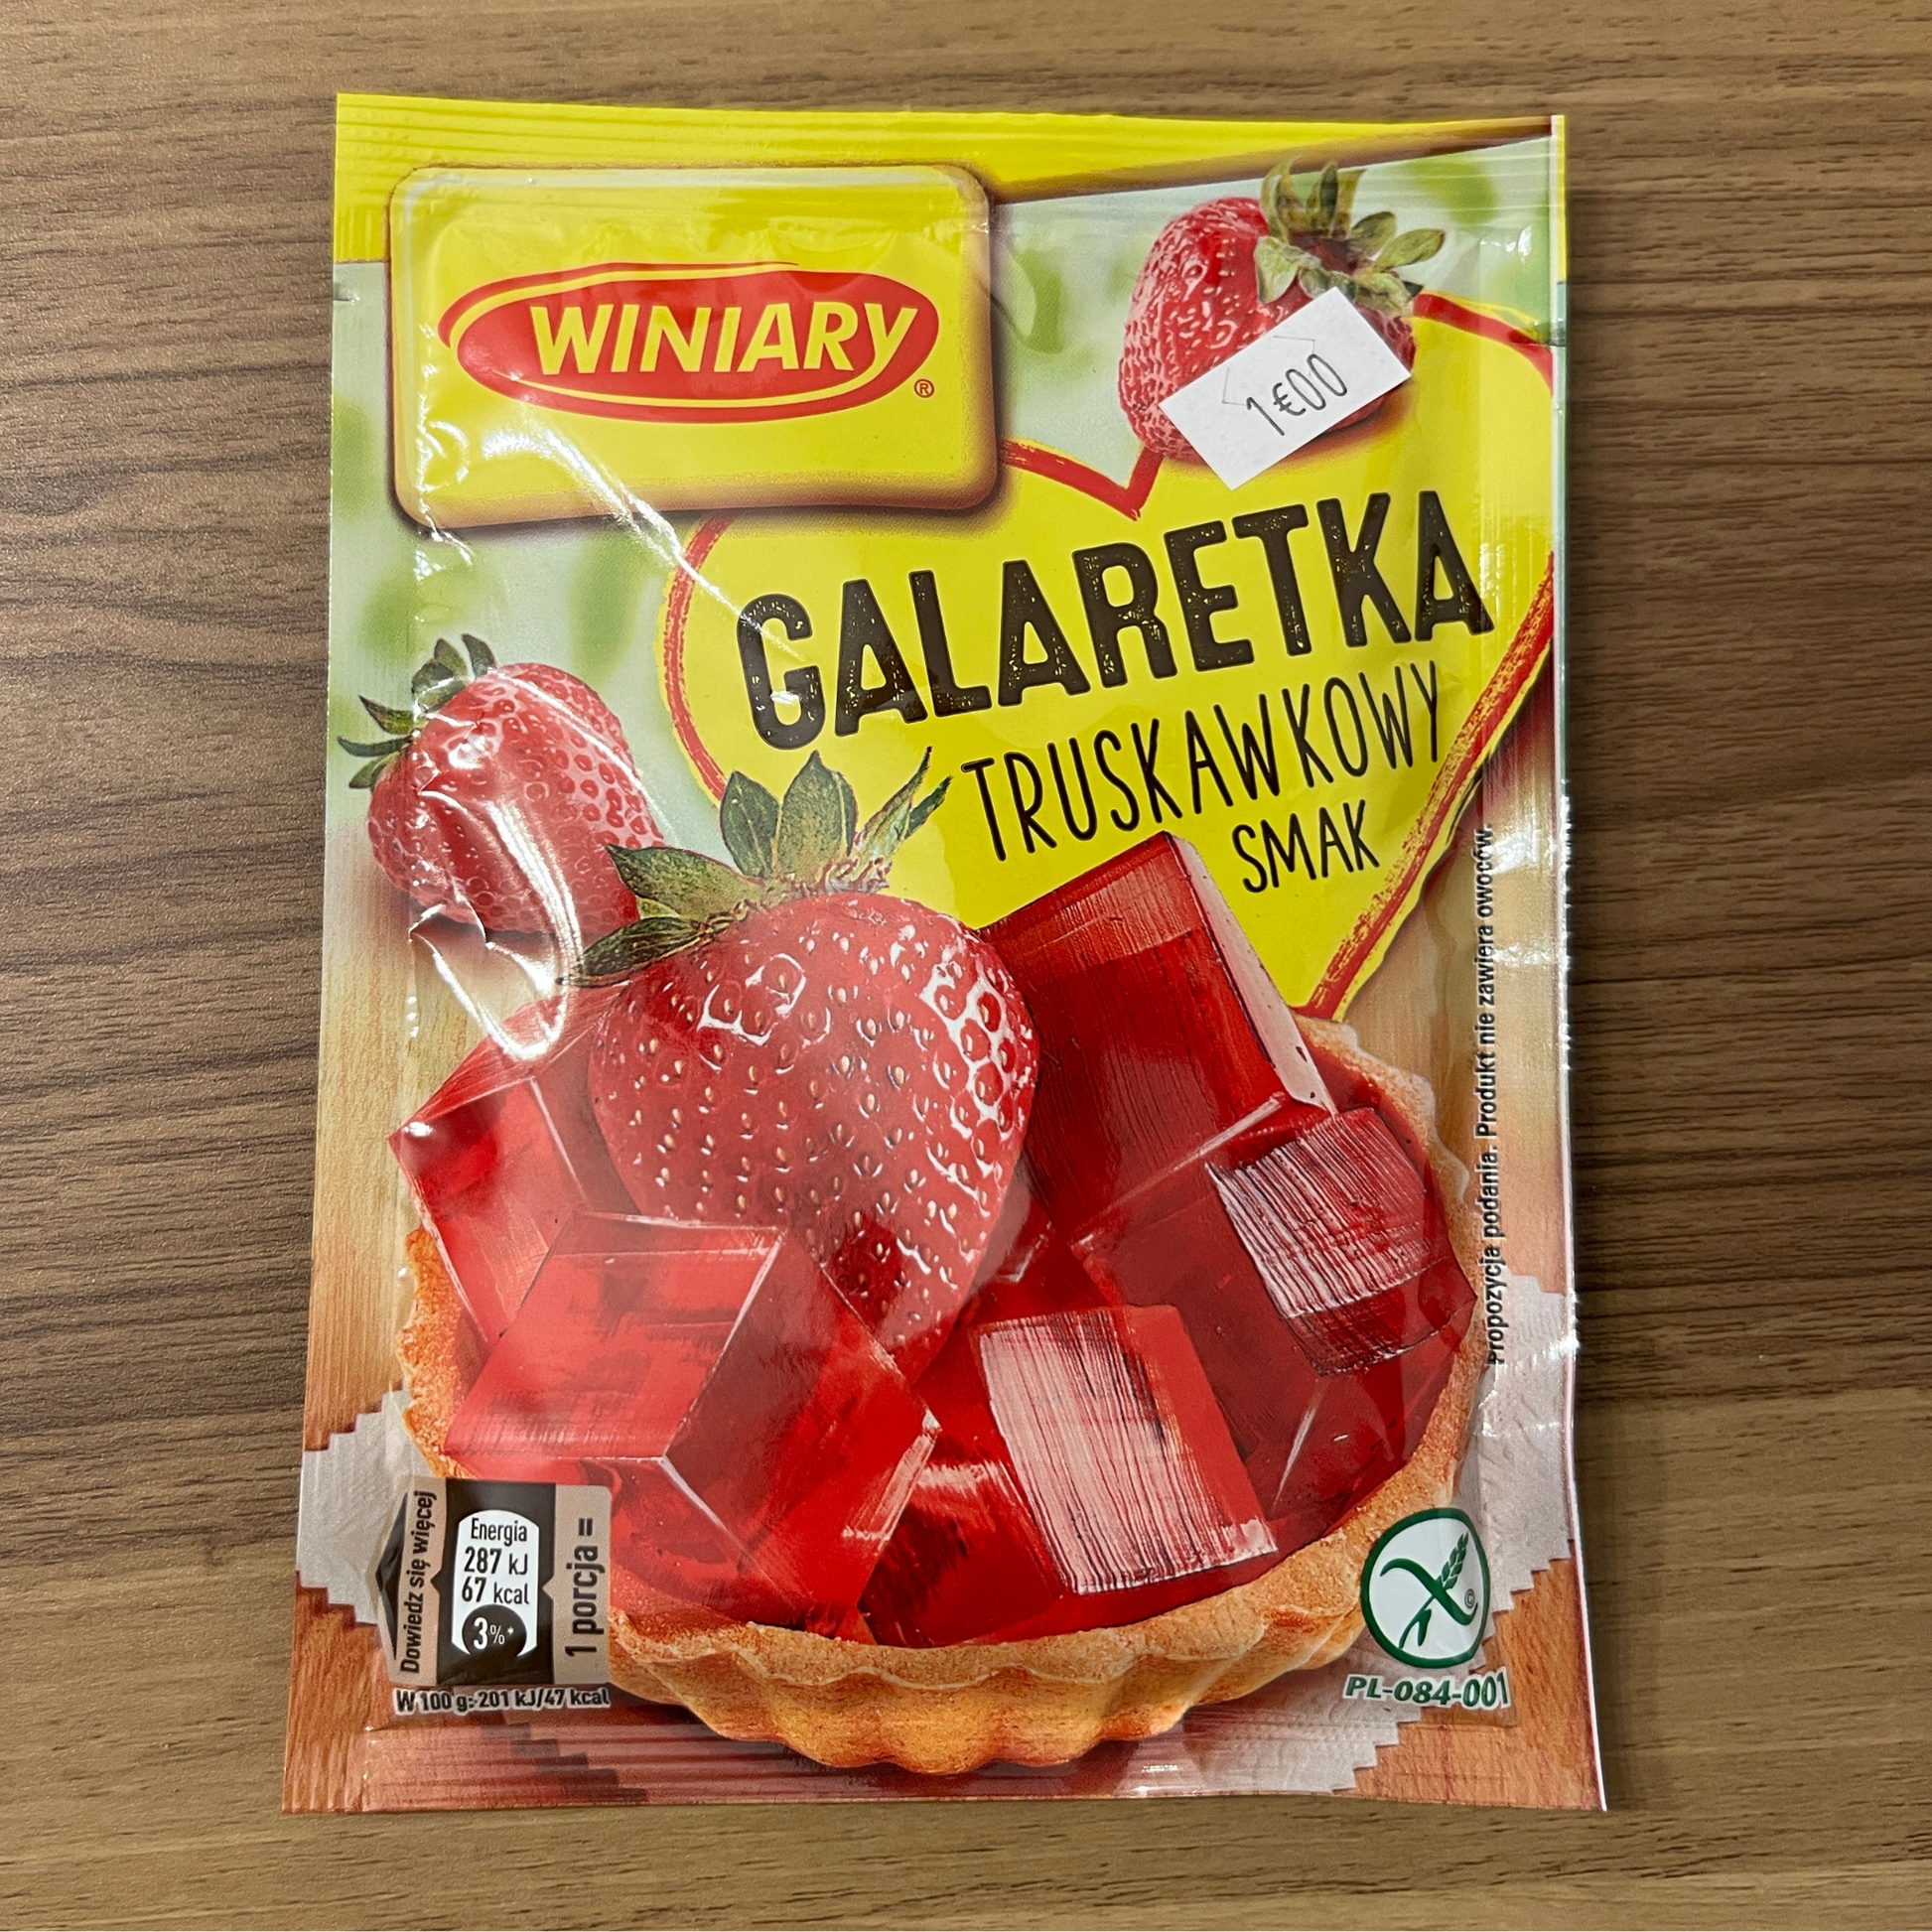 Galaretka gelée aux fruits - Trésors de Pologne